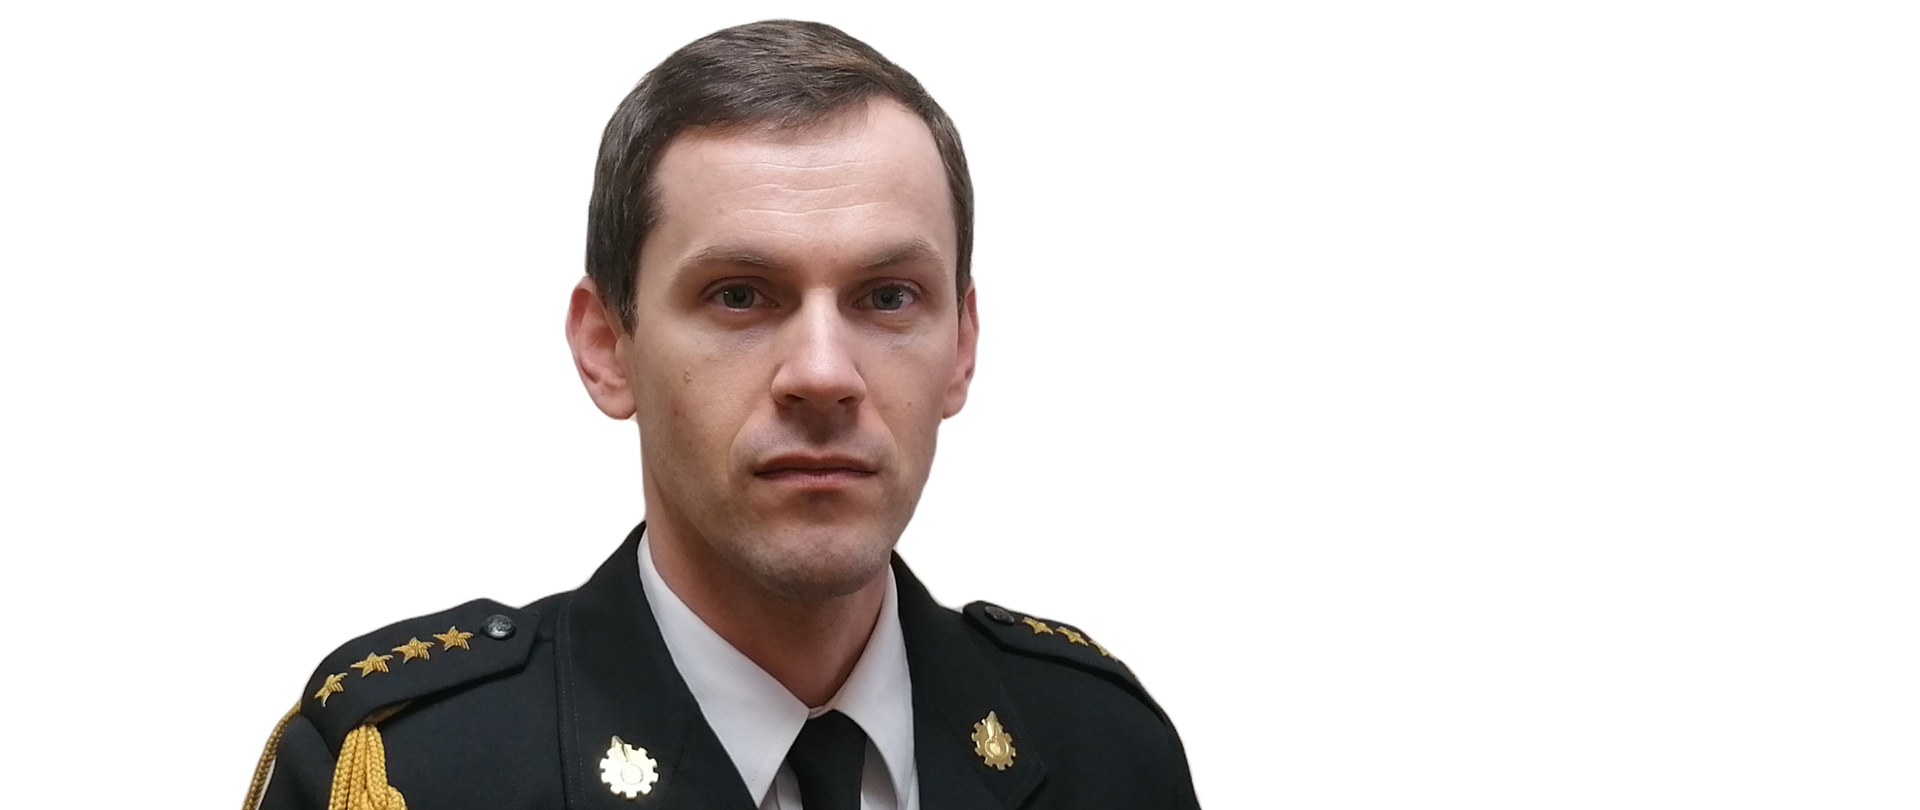 st. kpt. mgr inż. Kamil Pęcherz w mundurze galowym